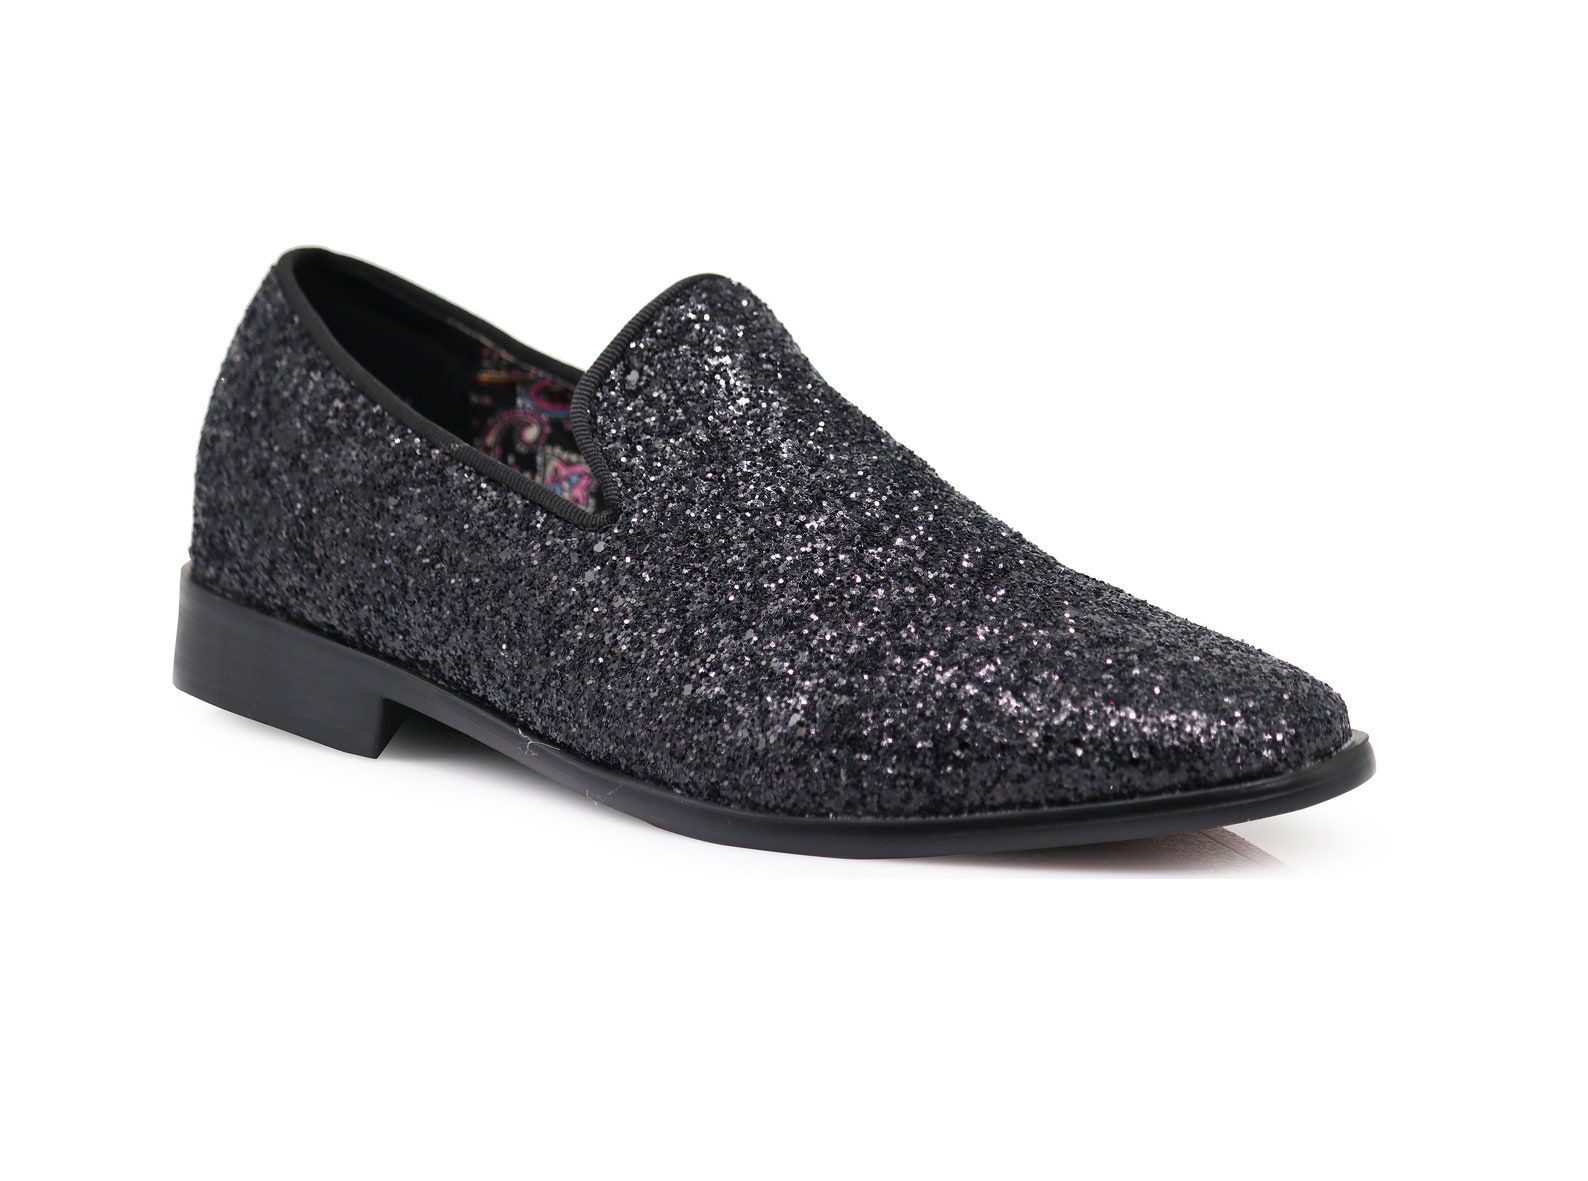 Men Black Sparkle Formal Dress Loafer Slip On Shoes | Etsy